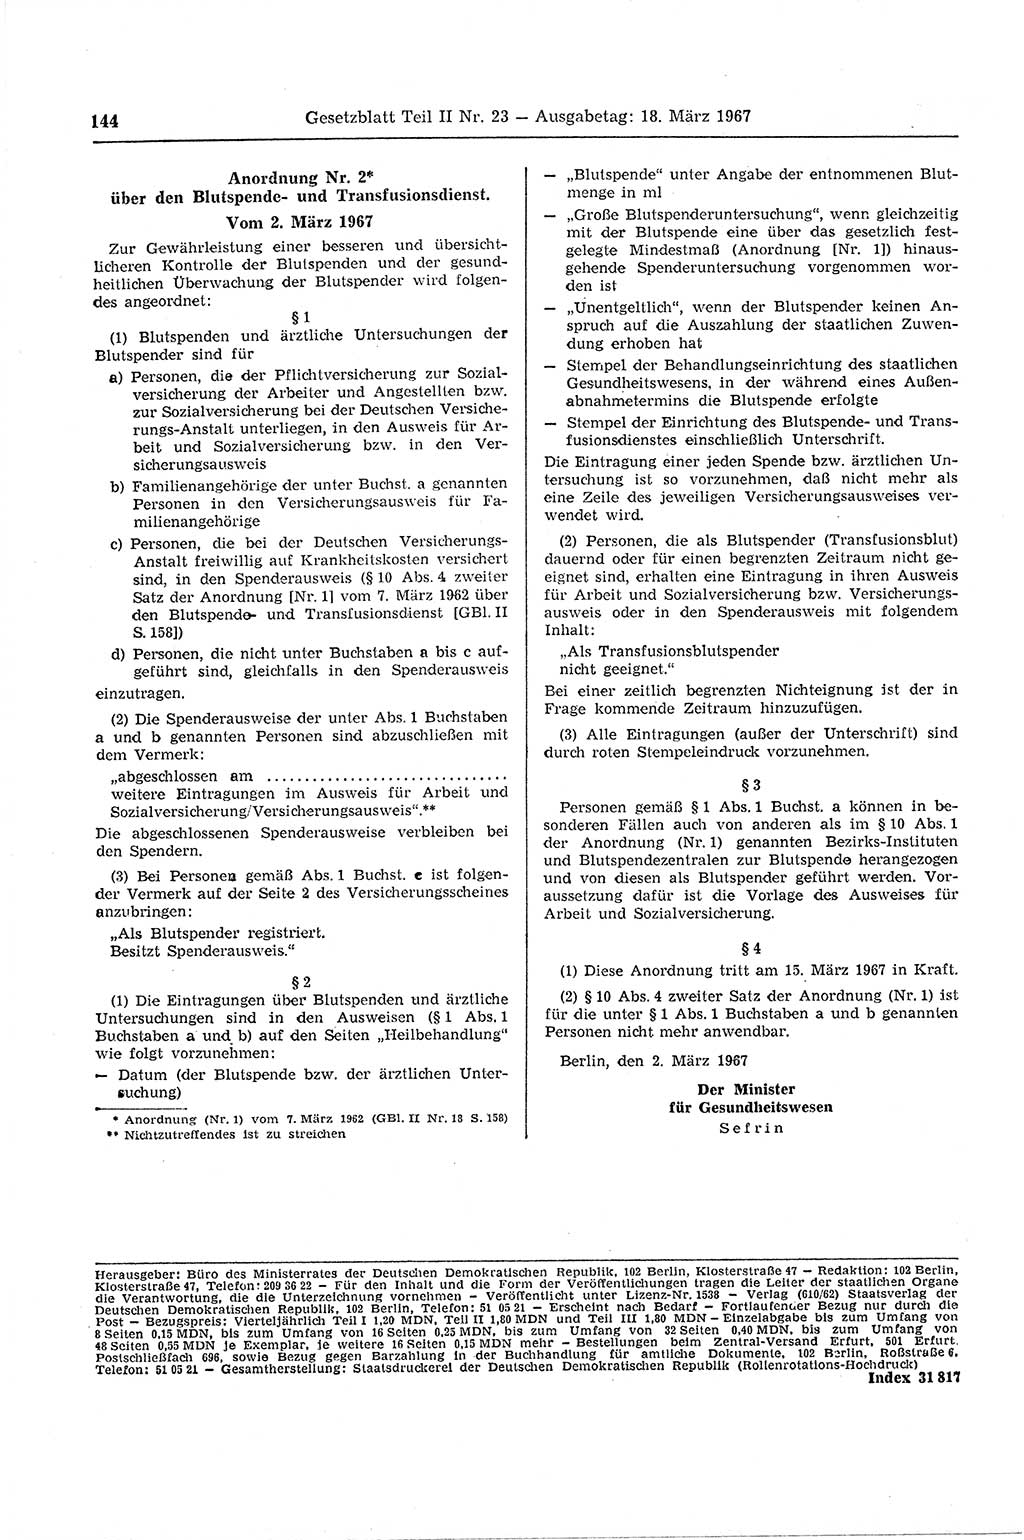 Gesetzblatt (GBl.) der Deutschen Demokratischen Republik (DDR) Teil ⅠⅠ 1967, Seite 144 (GBl. DDR ⅠⅠ 1967, S. 144)